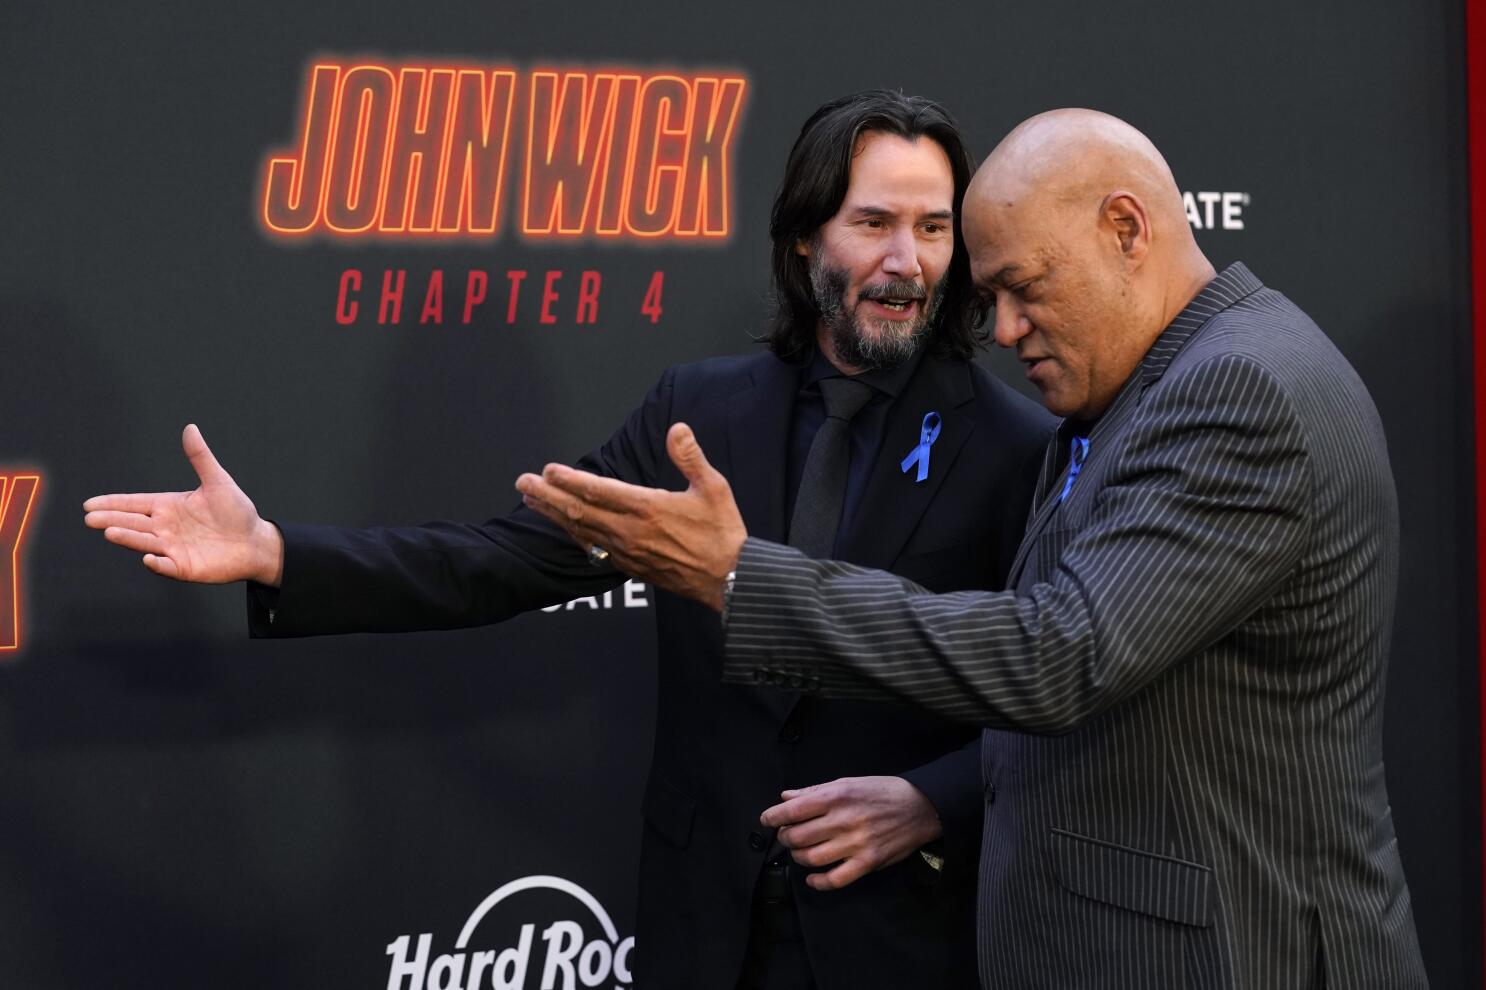 John Wick premiere has heartfelt tributes for Lance Reddick read